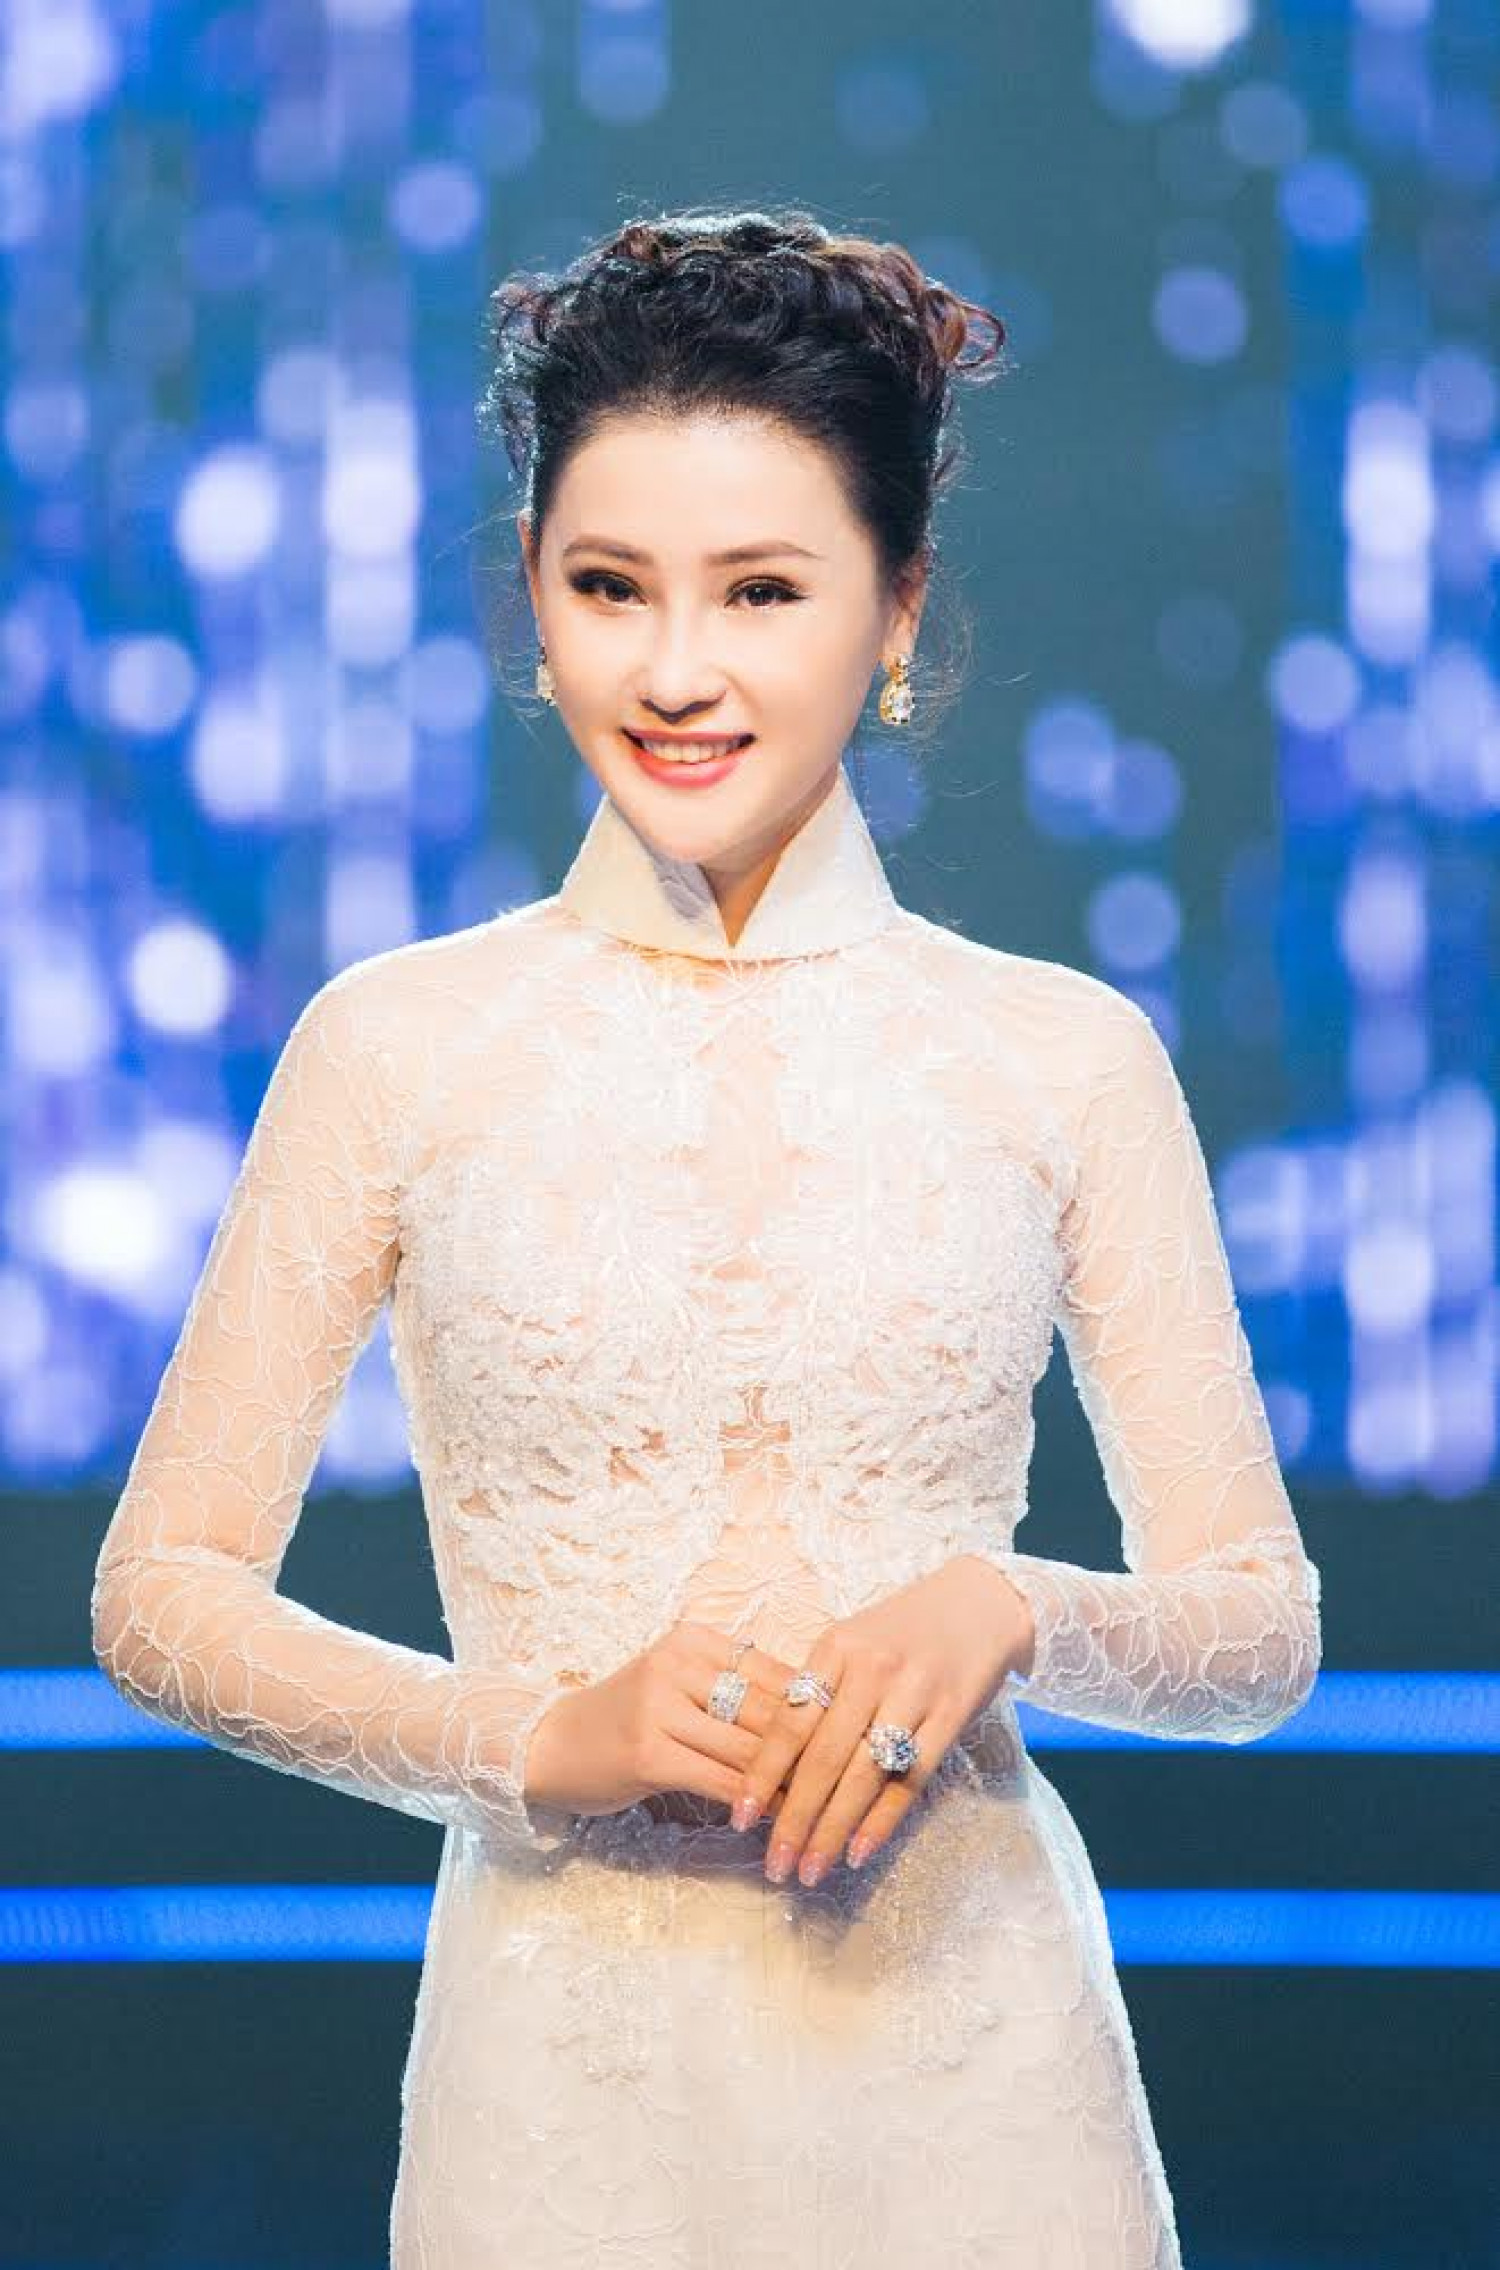 Á hậu trang sức Thái Như Ngọc là nhà tài trợ đồng hành cùng các thí sinh Hoa hậu Việt Nam 2018 trong phần thi Hoa hậu Nhân ái. Chương trình phát sóng lúc 20h30 tối chủ nhật 26/8 trên VTV9.